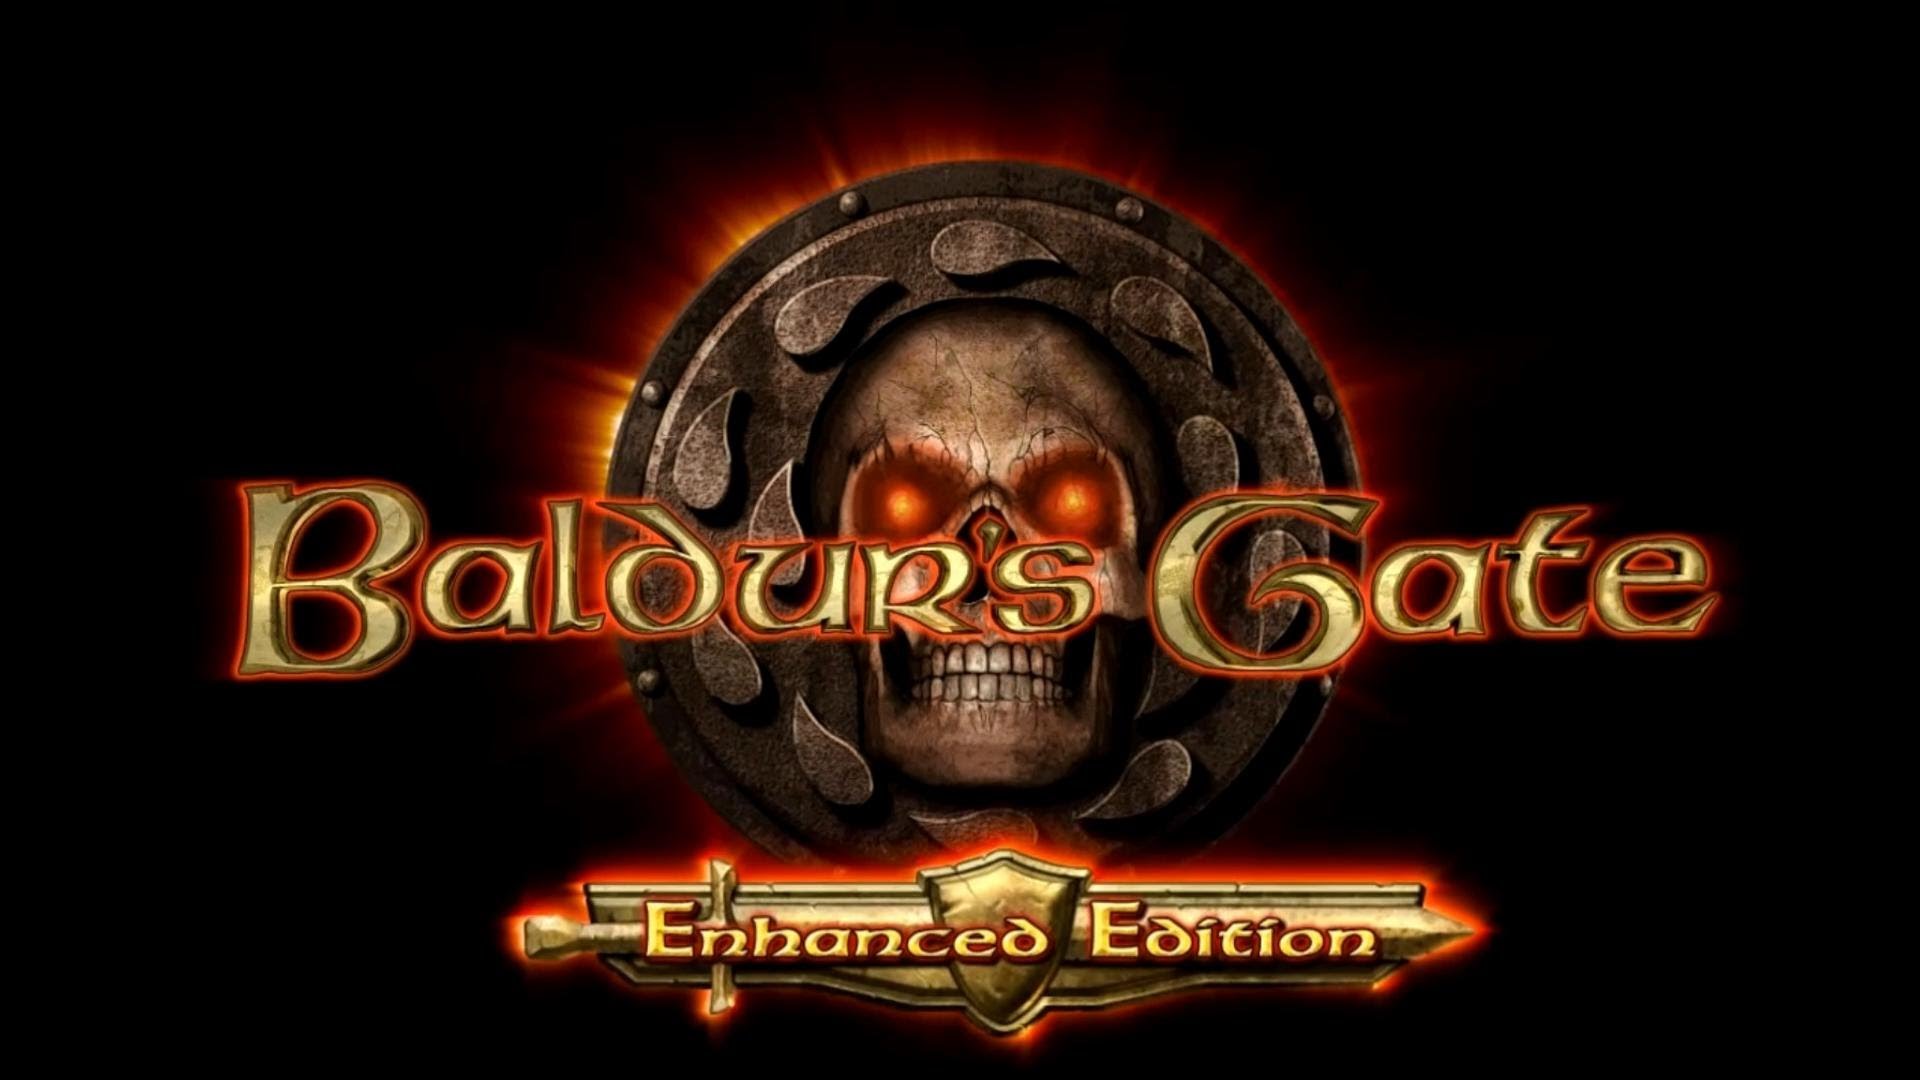 Baldur's Gate: Enhanced Edition HD wallpapers, Desktop wallpaper - most viewed